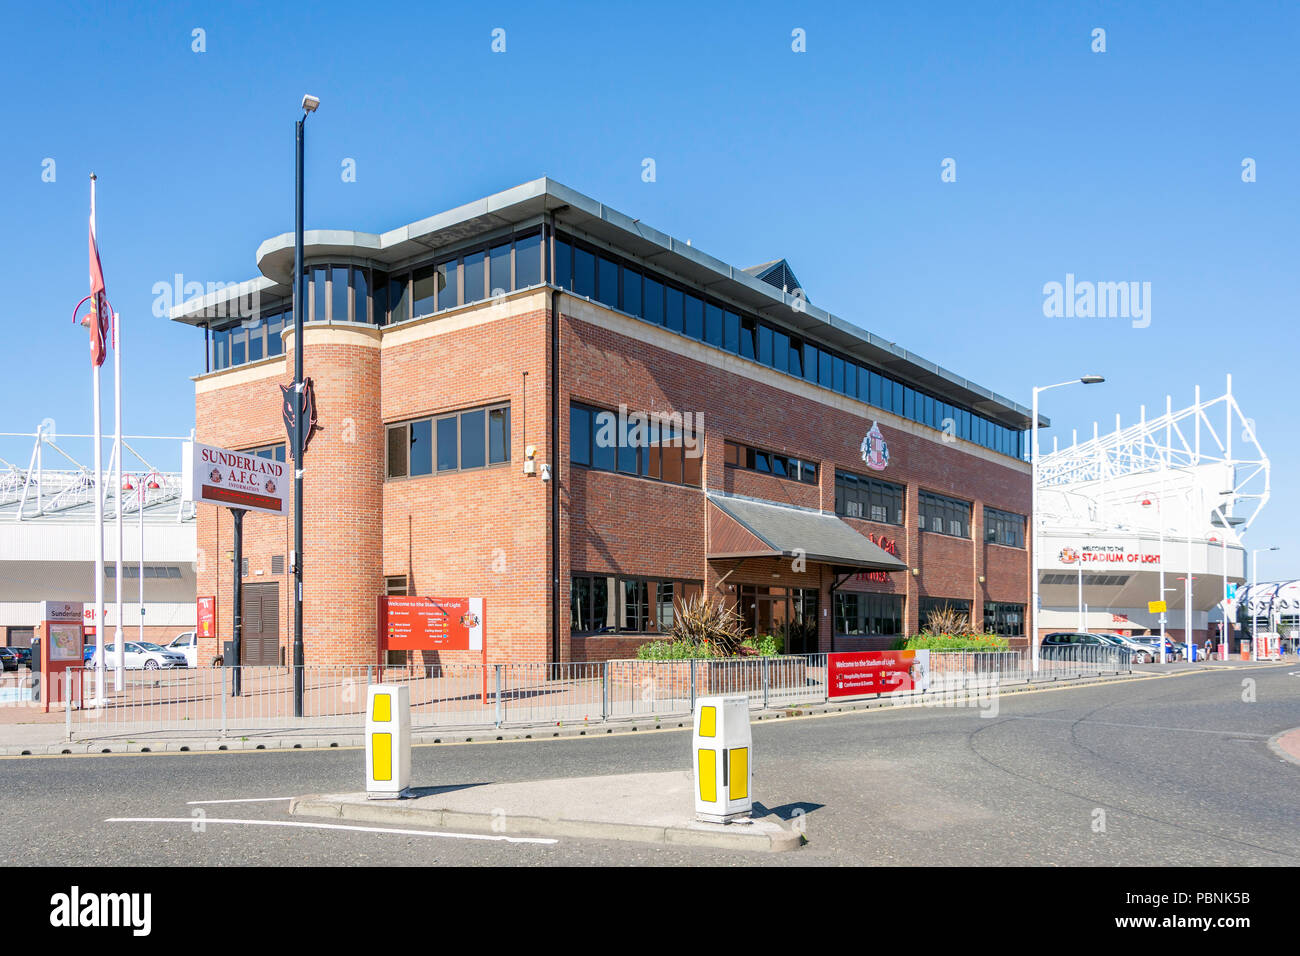 Sunderland A.F.C Hauptsitz & Stadion des Lichts, Stadion, Schafställe, Sunderland, Tyne und Wear, England, Vereinigtes Königreich Stockfoto